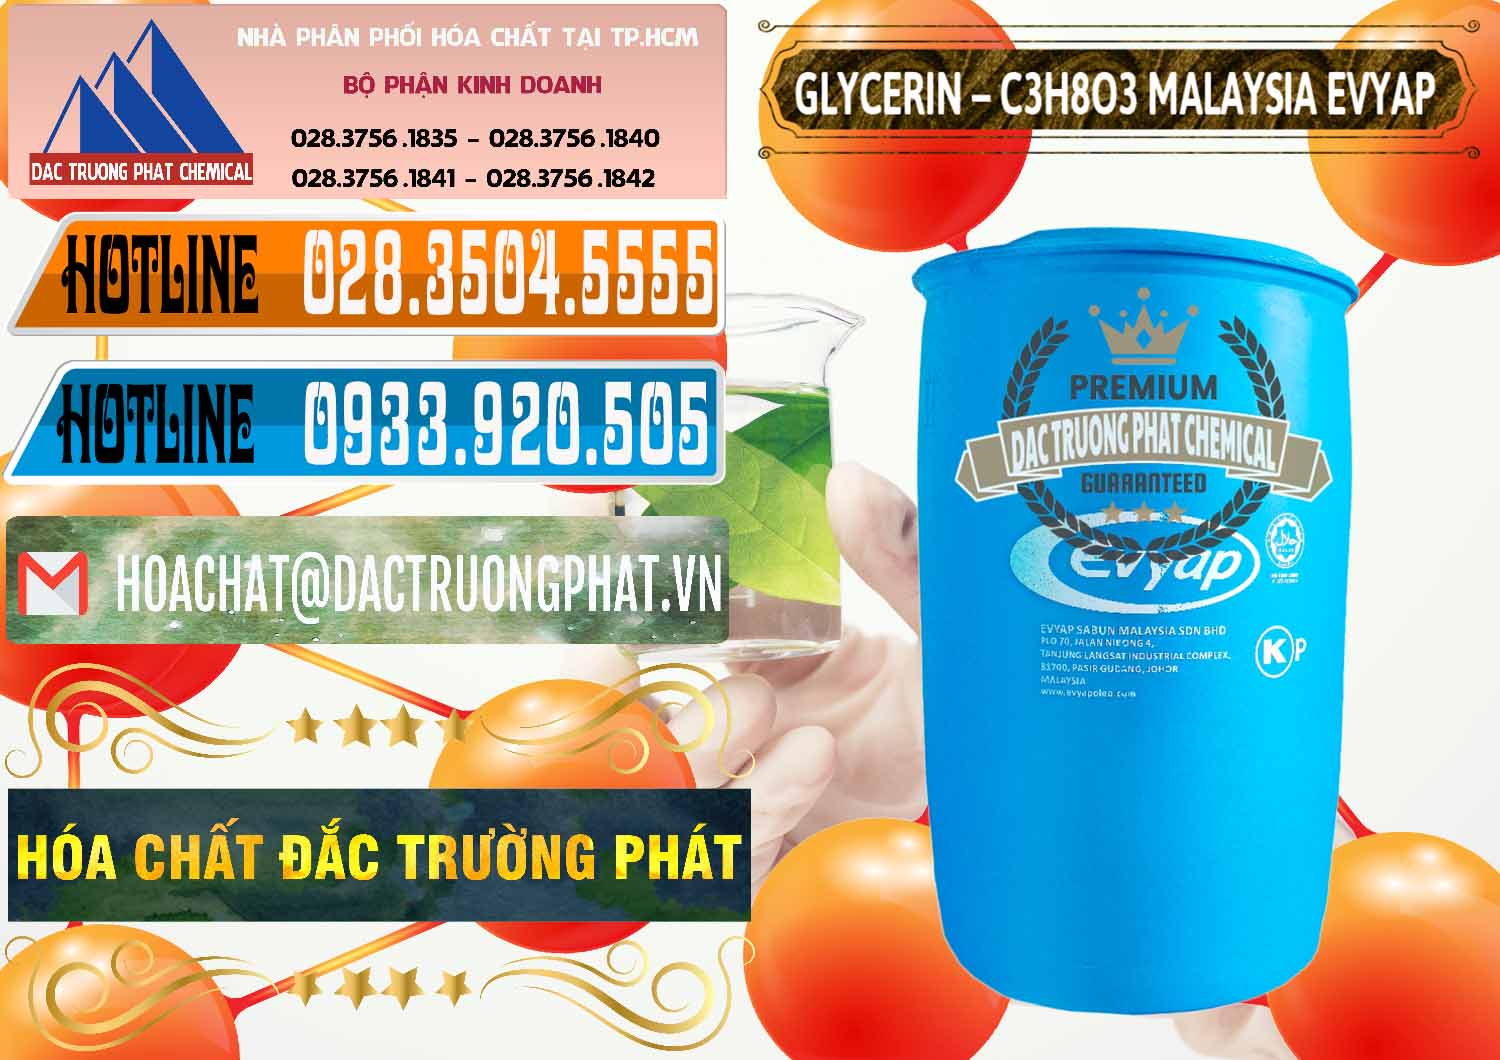 Nơi chuyên kinh doanh & bán Glycerin – C3H8O3 Malaysia Evyap - 0066 - Đơn vị chuyên phân phối và bán hóa chất tại TP.HCM - stmp.net